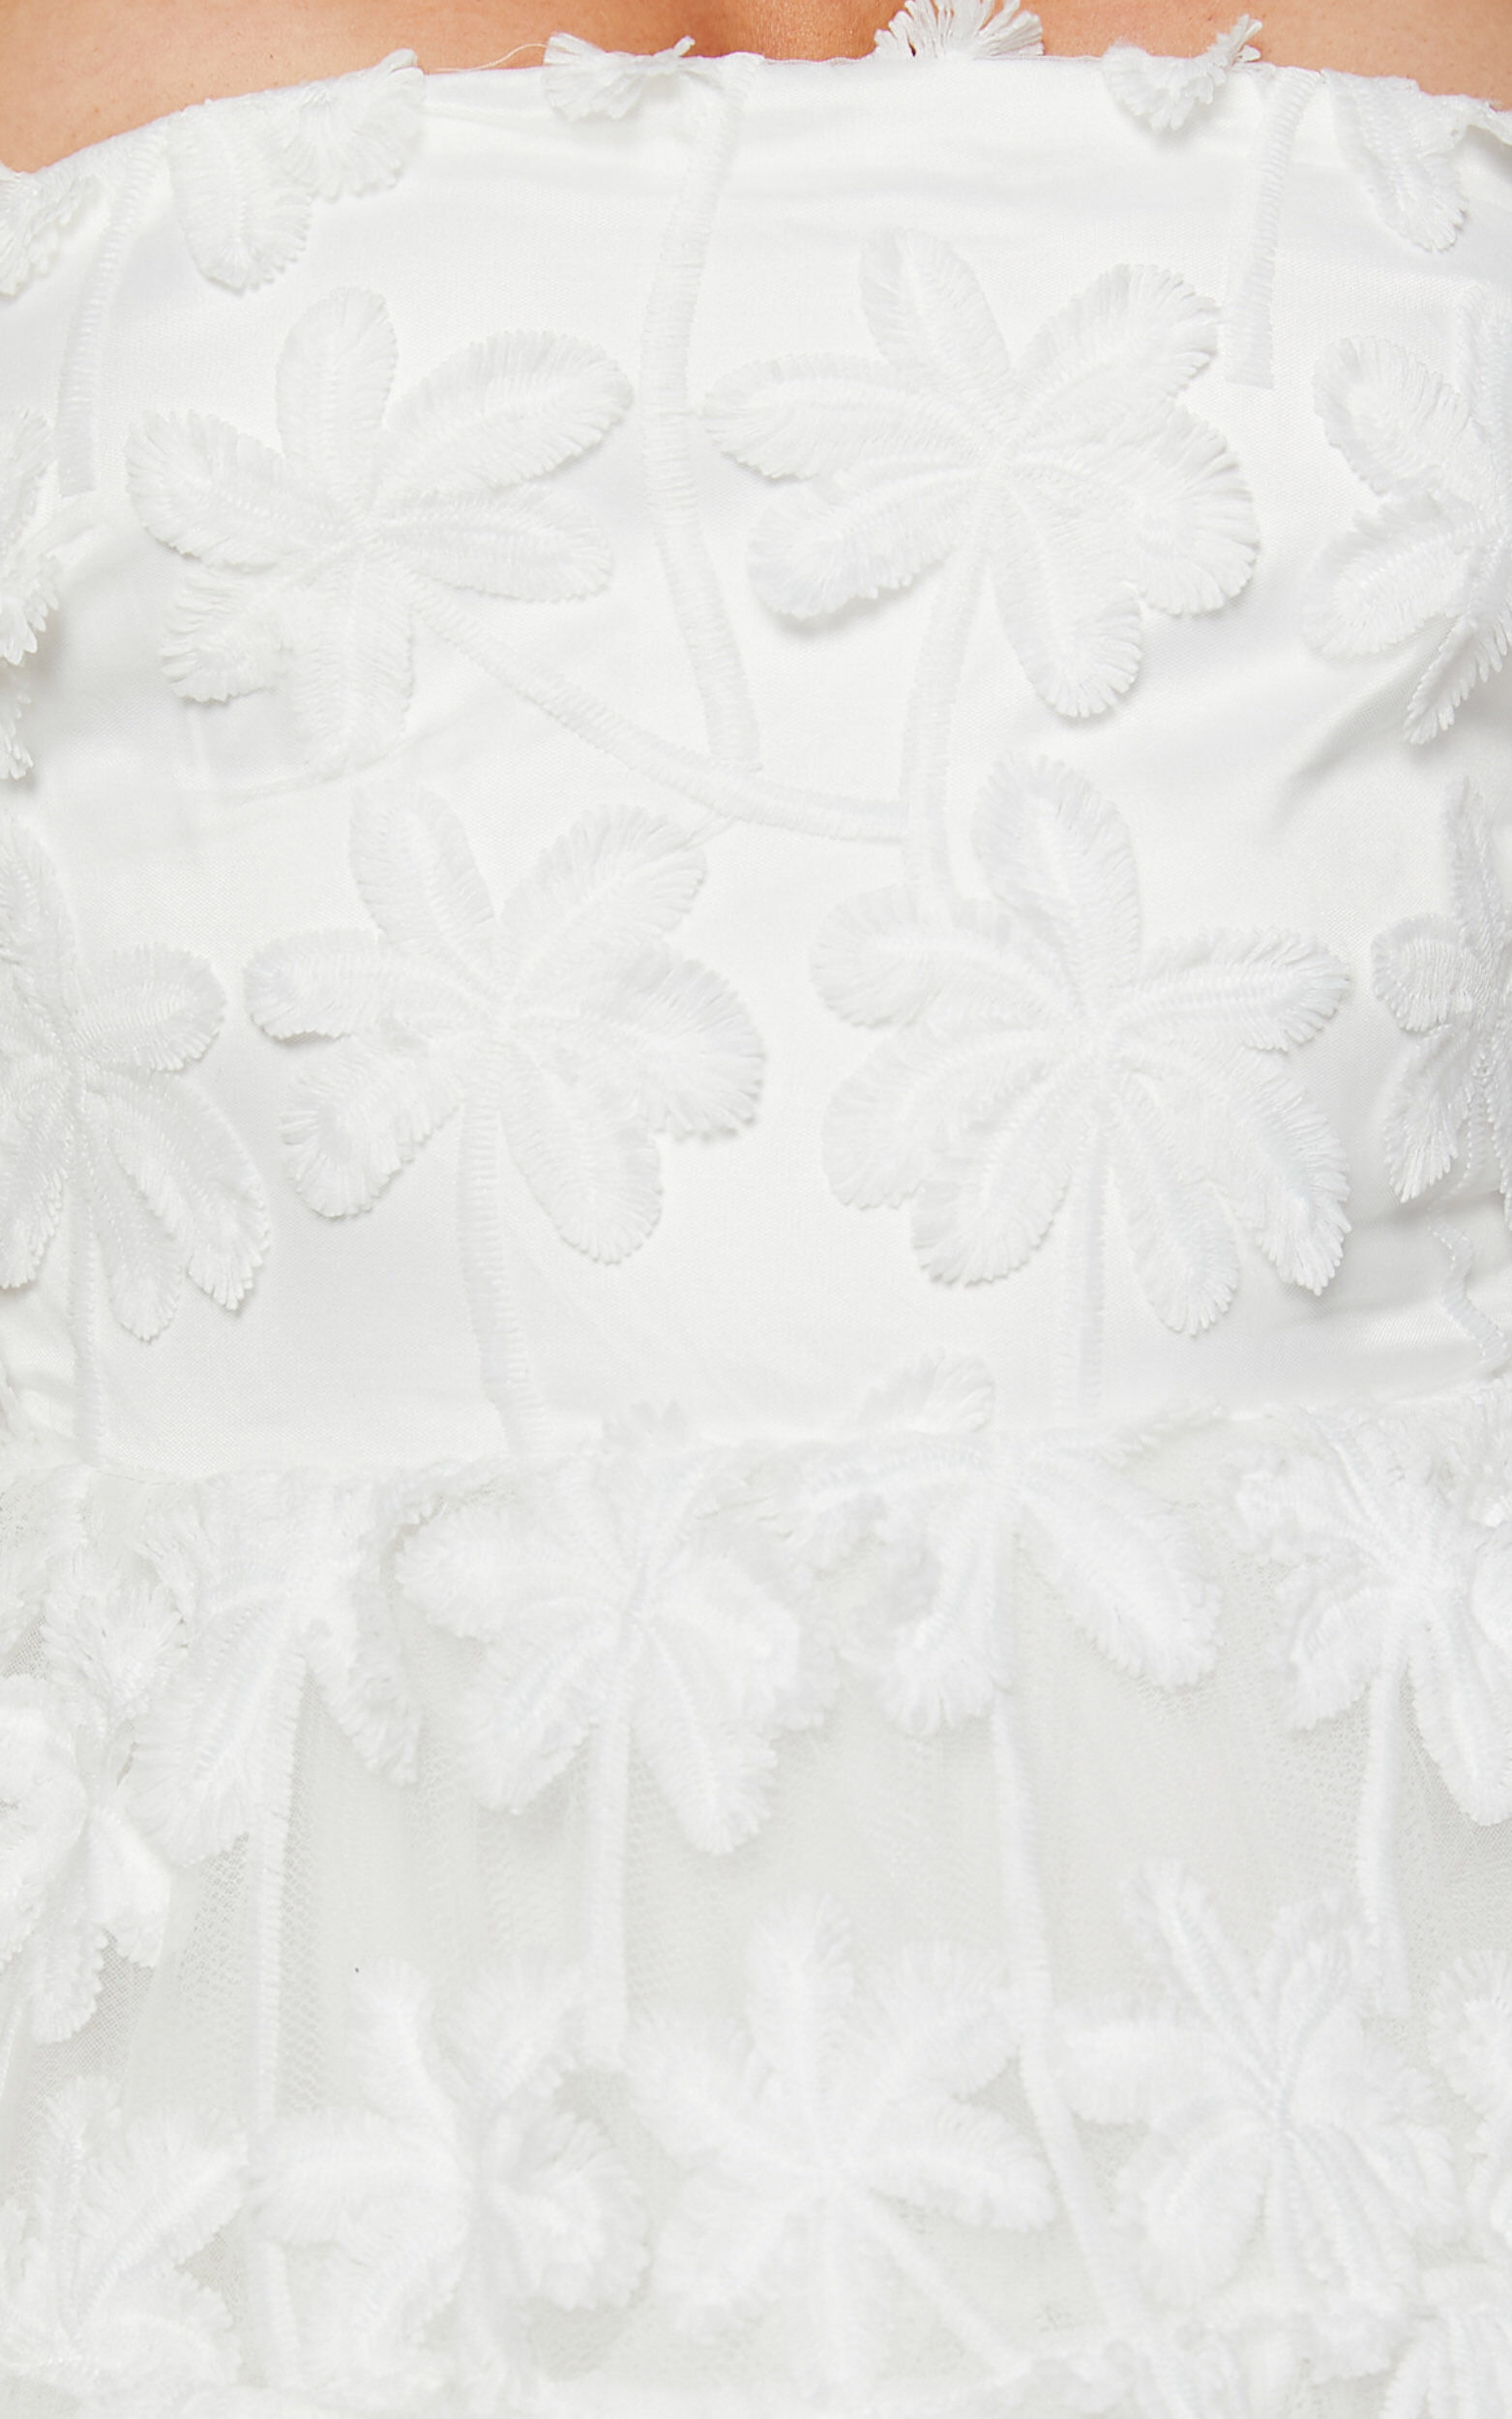 Rheiva Mini Dress - Strapless 3D Embroidery Dress in White | Showpo